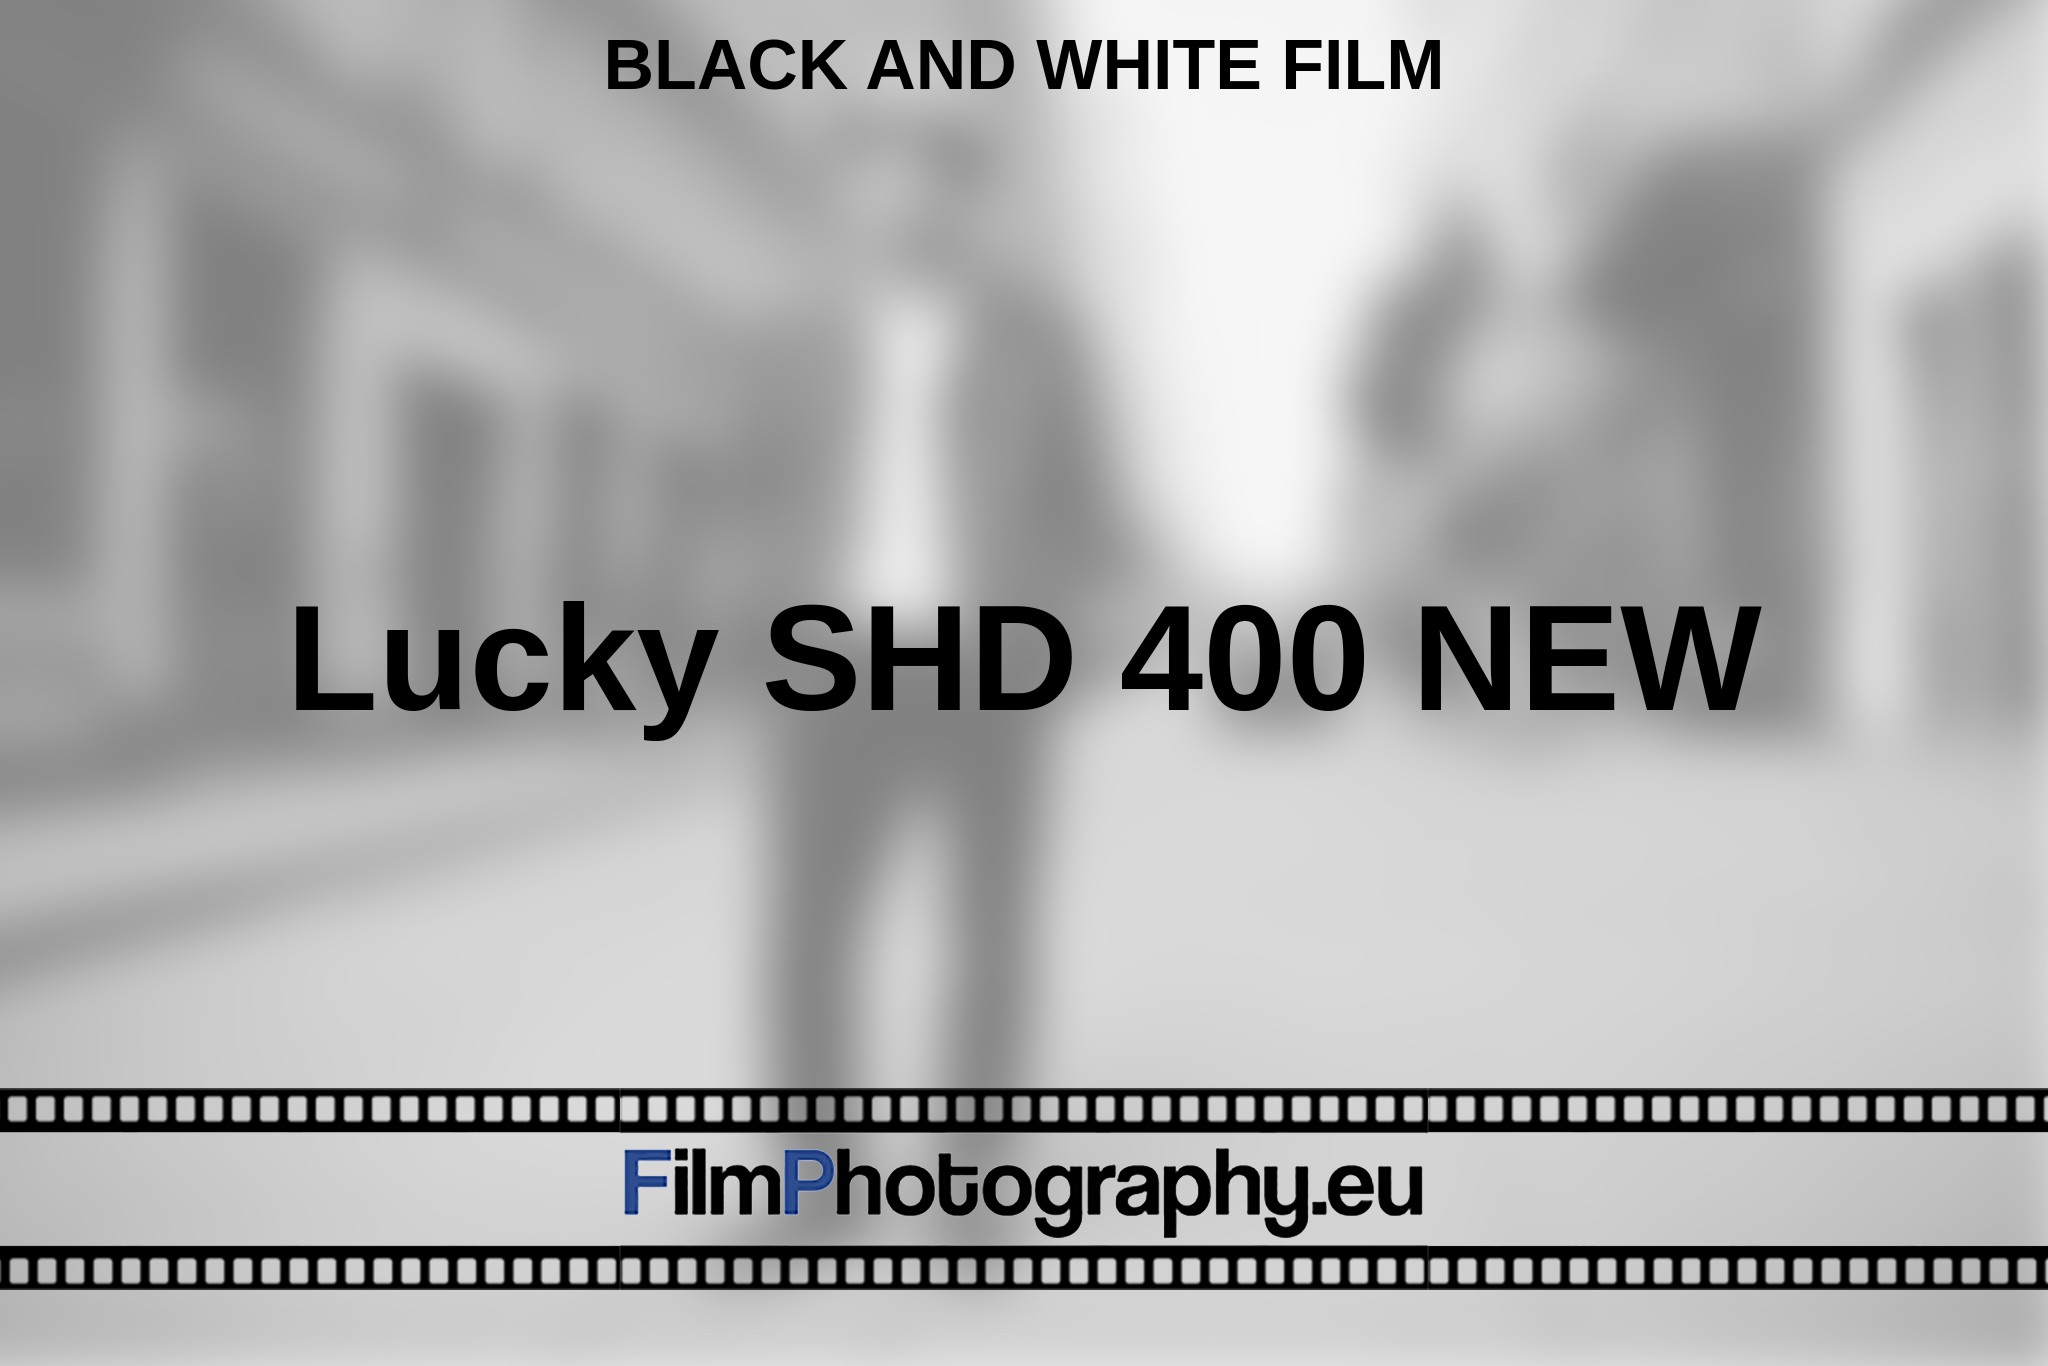 lucky-shd-400-new-black-and-white-film-en-bnv.jpg